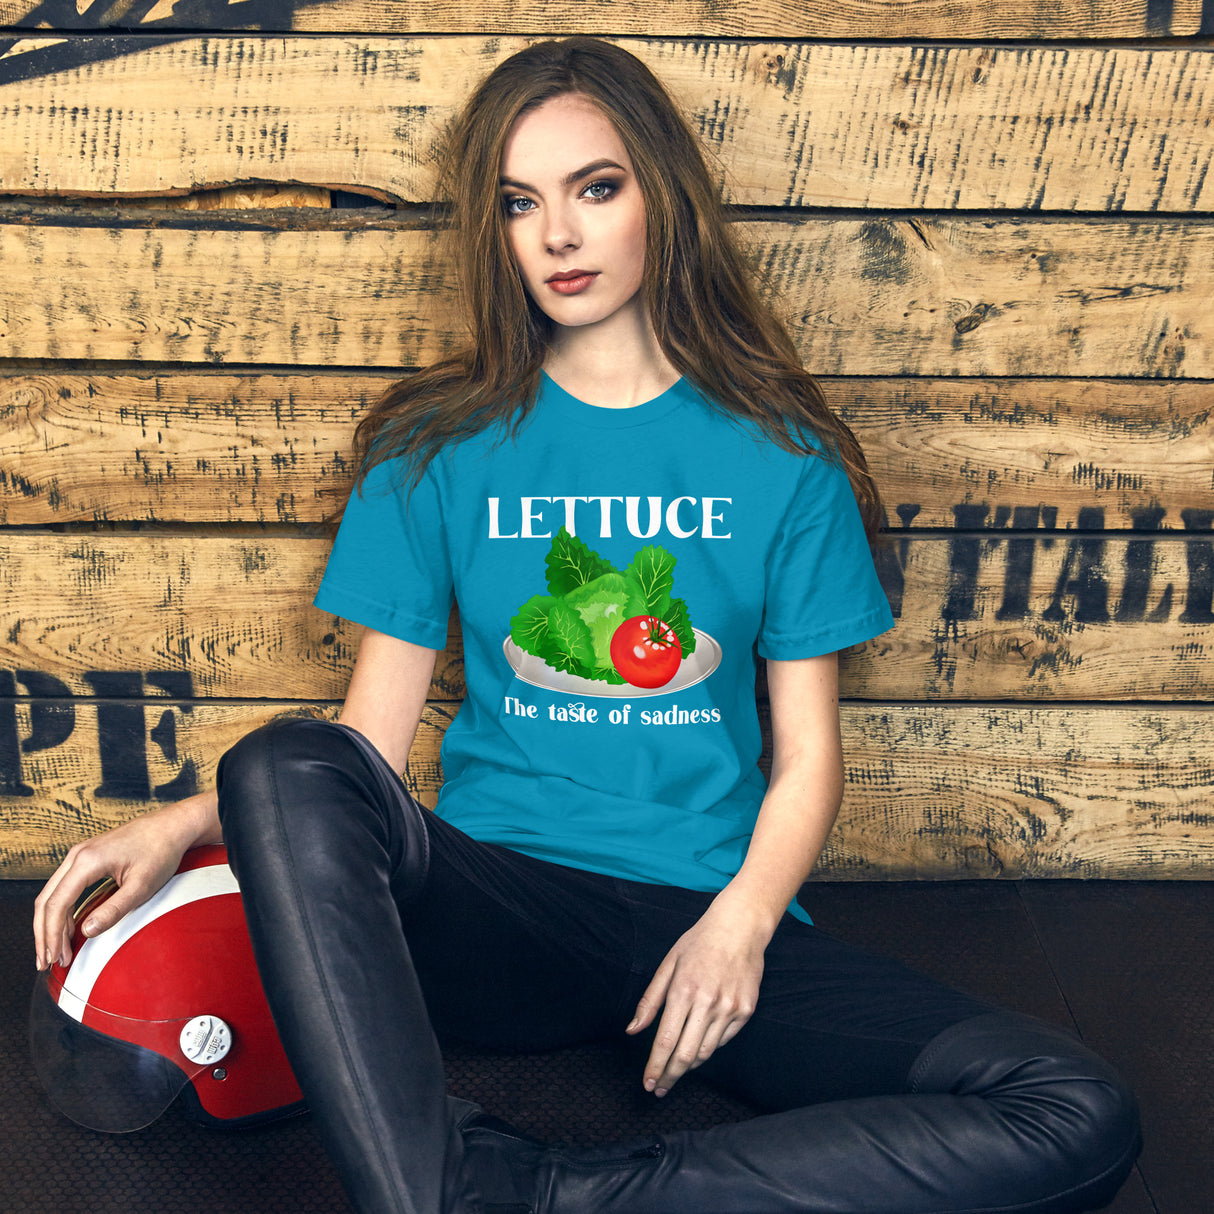 Lettuce is the taste of sadness women's shirt